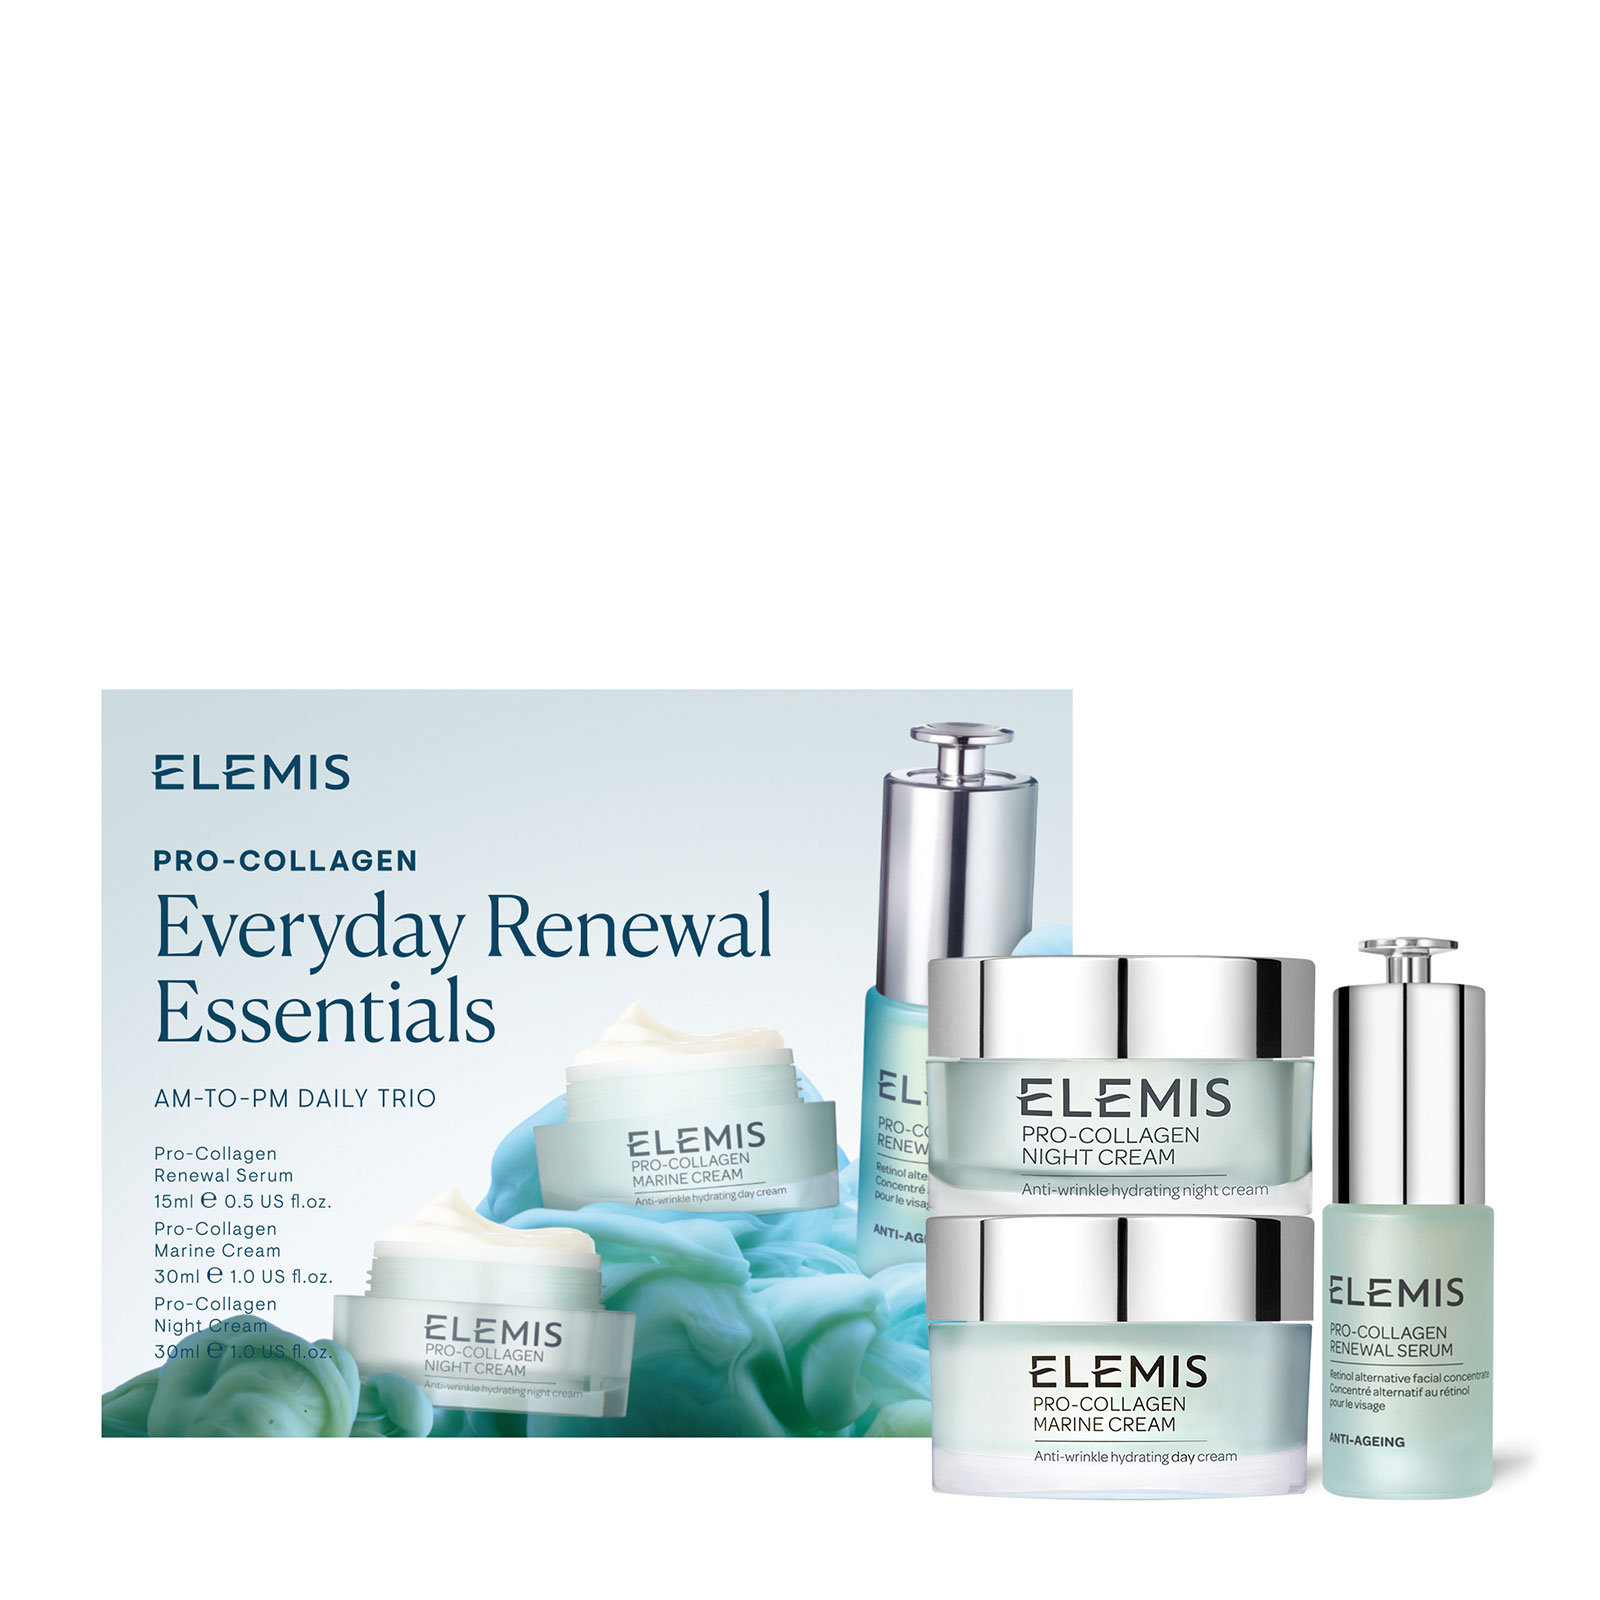 ELEMIS Pro-Collagen Everyday Renewal Essentials